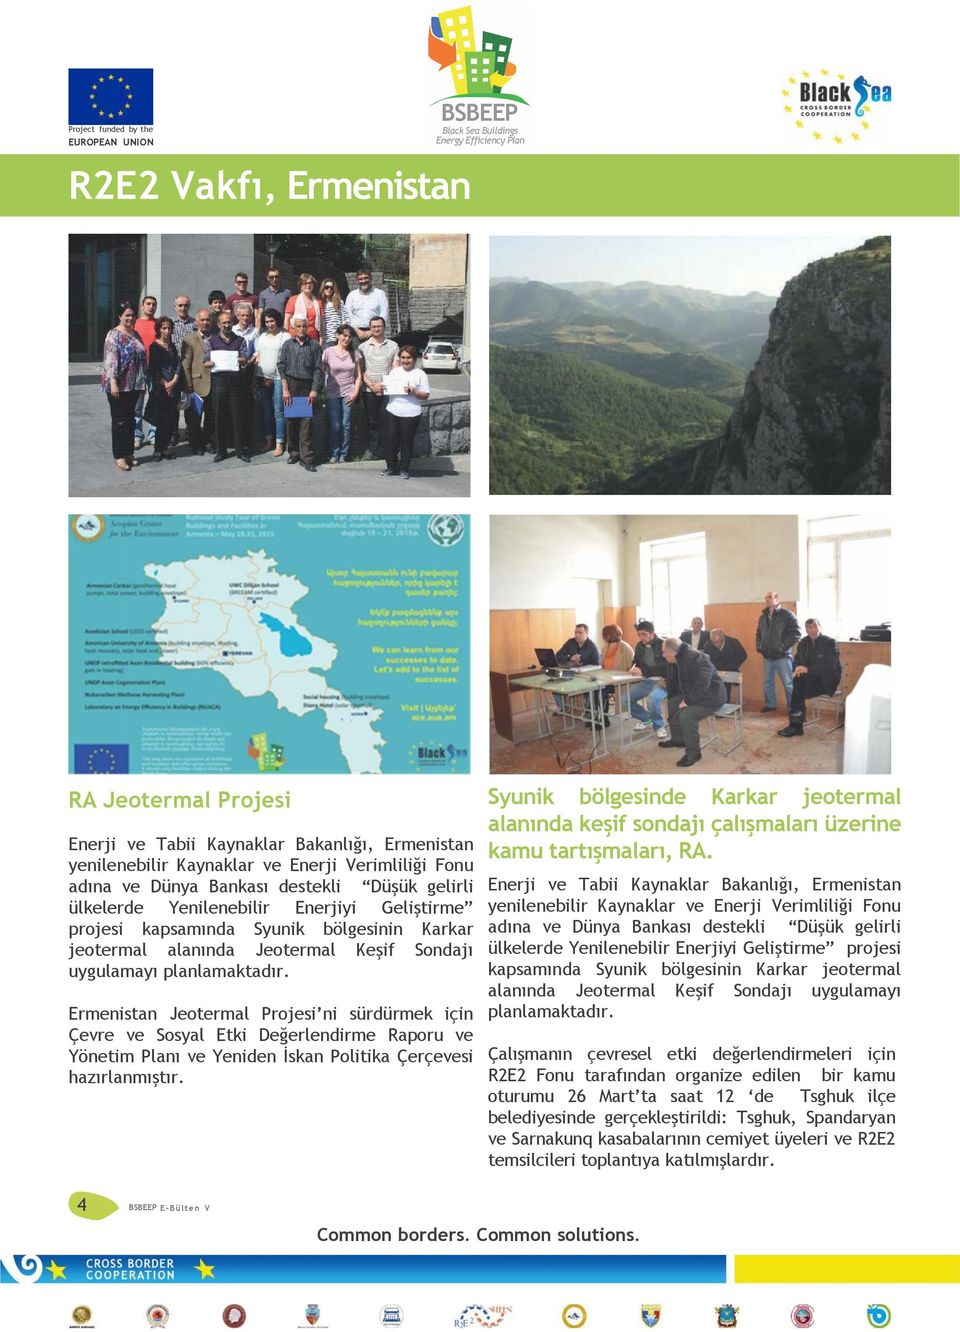 Ermenistan Jeotermal Projesi ni sürdürmek için Çevre ve Sosyal Etki Değerlendirme Raporu ve Yönetim Planı ve Yeniden İskan Politika Çerçevesi hazırlanmıştır.